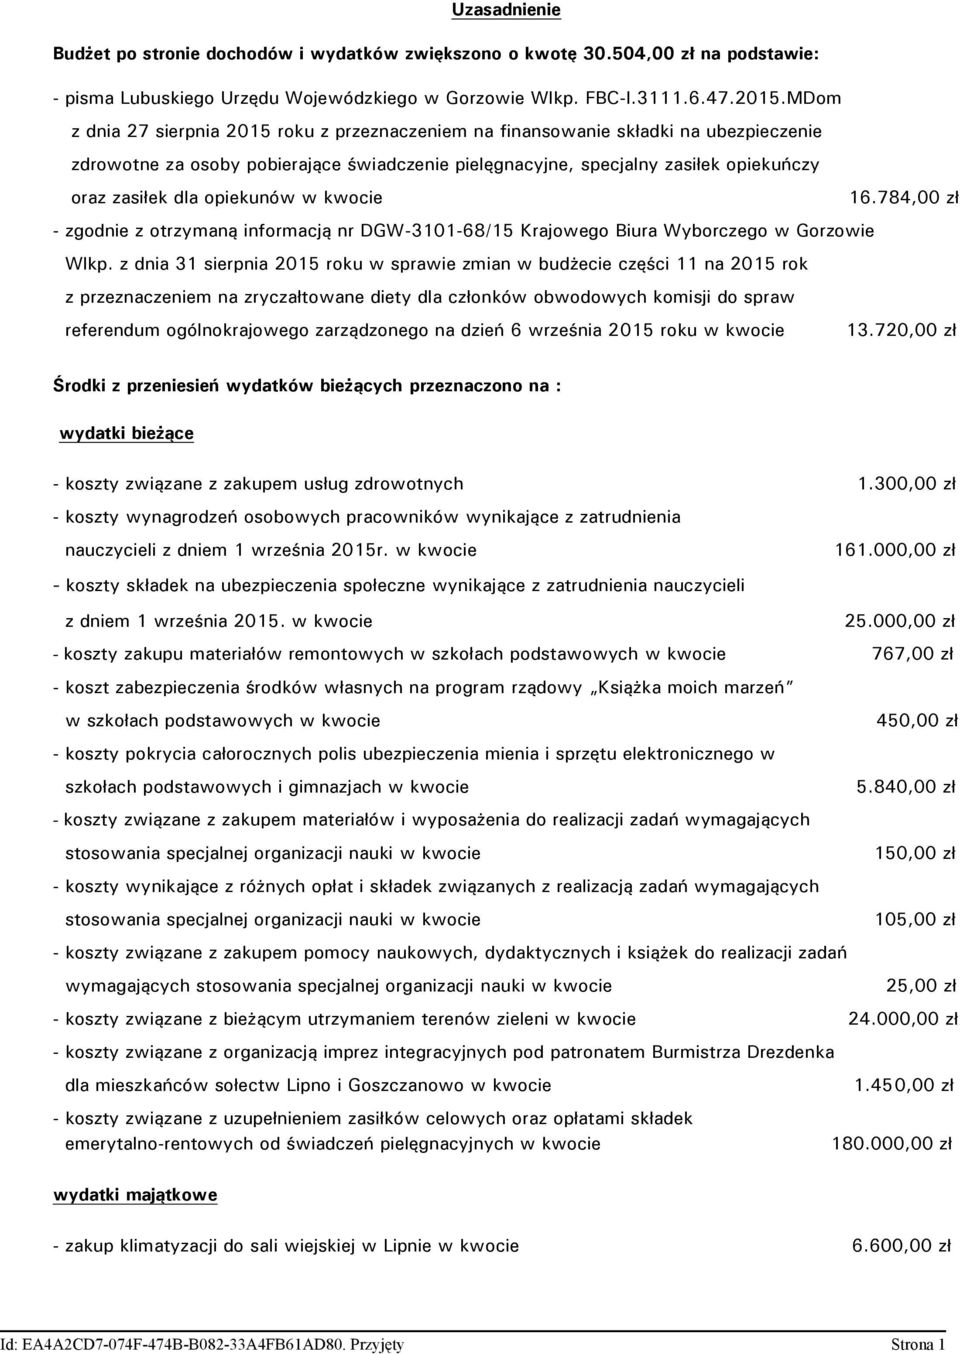 opiekunów w kwocie 16.784,00 zł - zgodnie z otrzymaną informacją nr DGW-3101-68/15 Krajowego Biura Wyborczego w Gorzowie Wlkp.